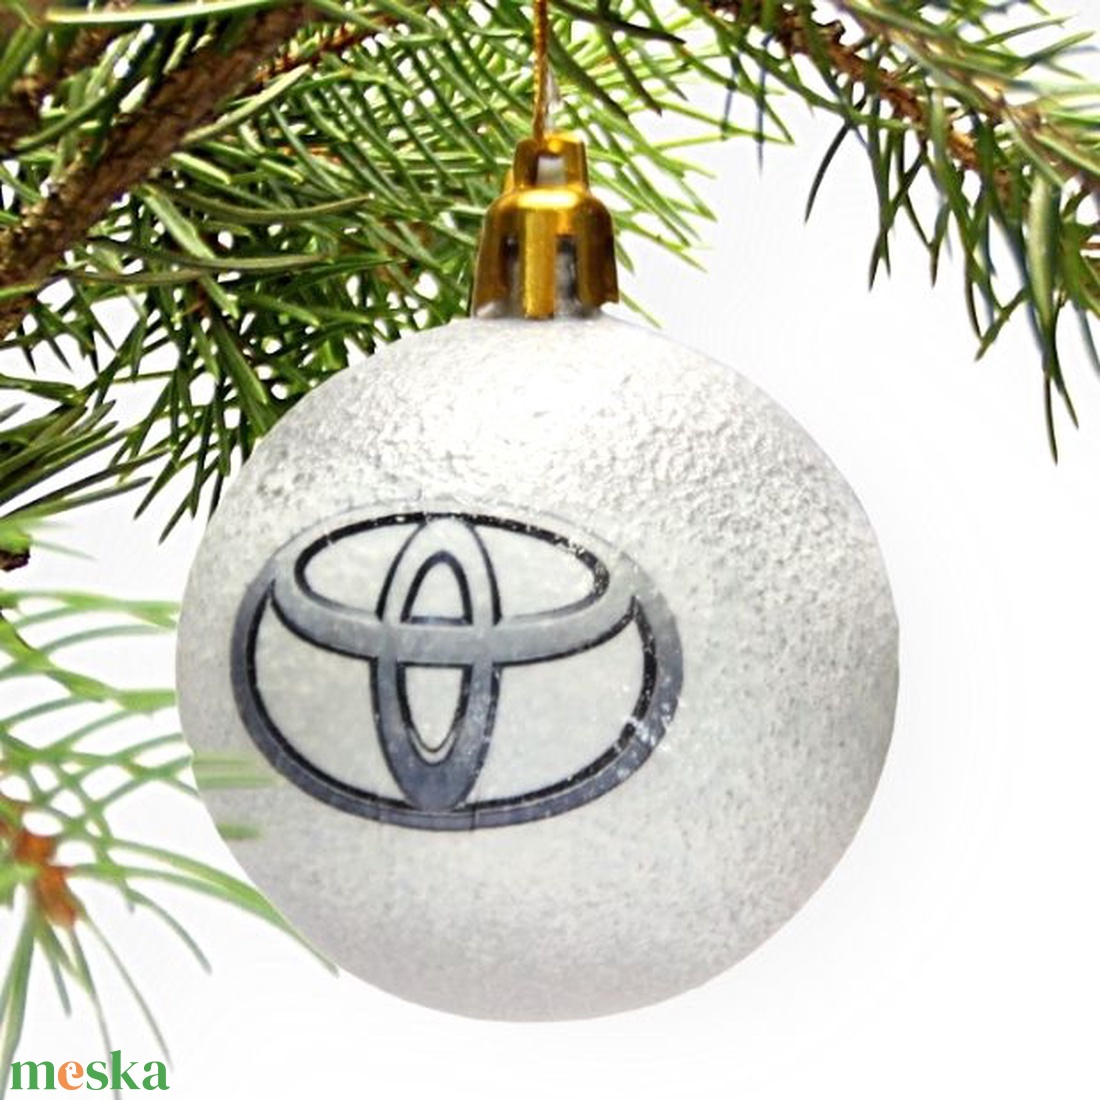 Karácsonyfa gömb autó témájú emblémával - TOYOTA  márka rajongóinak -  párodnak; szerelmednek  mikulásra és karácsonyra  - karácsony - karácsonyi lakásdekoráció - karácsonyfadíszek - Meska.hu